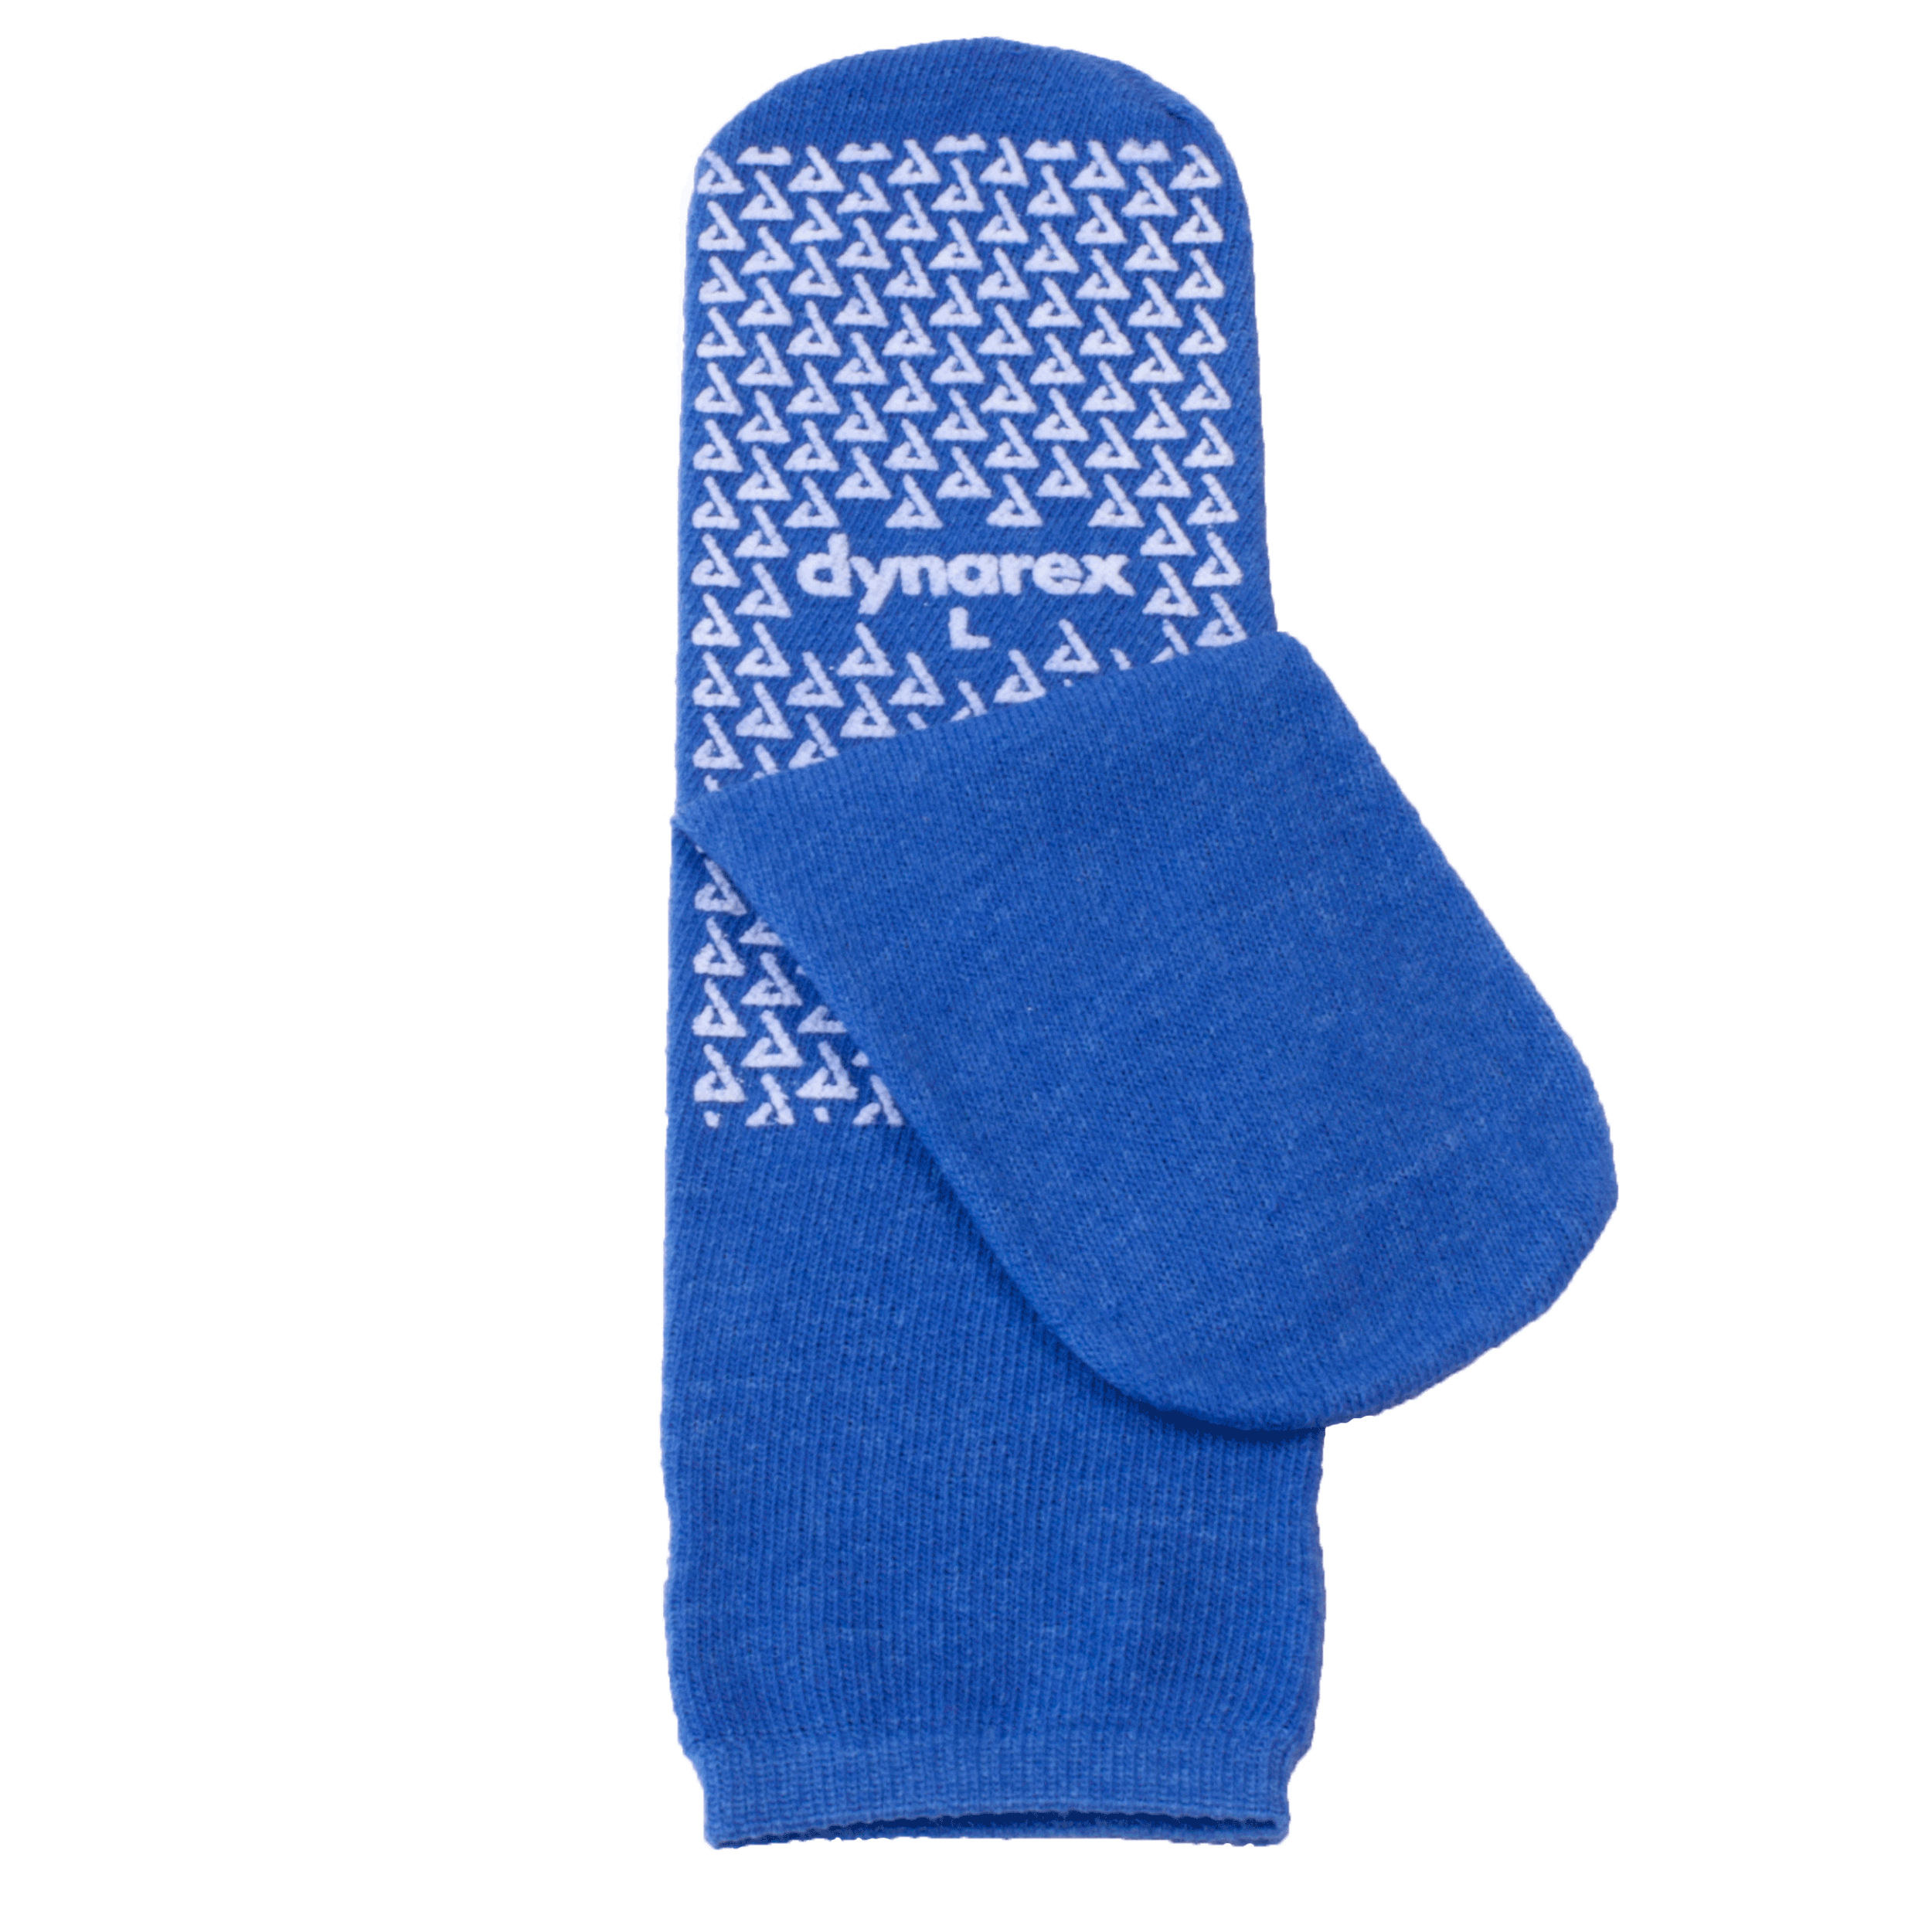 Single-Sided Slipper Socks - Large, Dark Blue